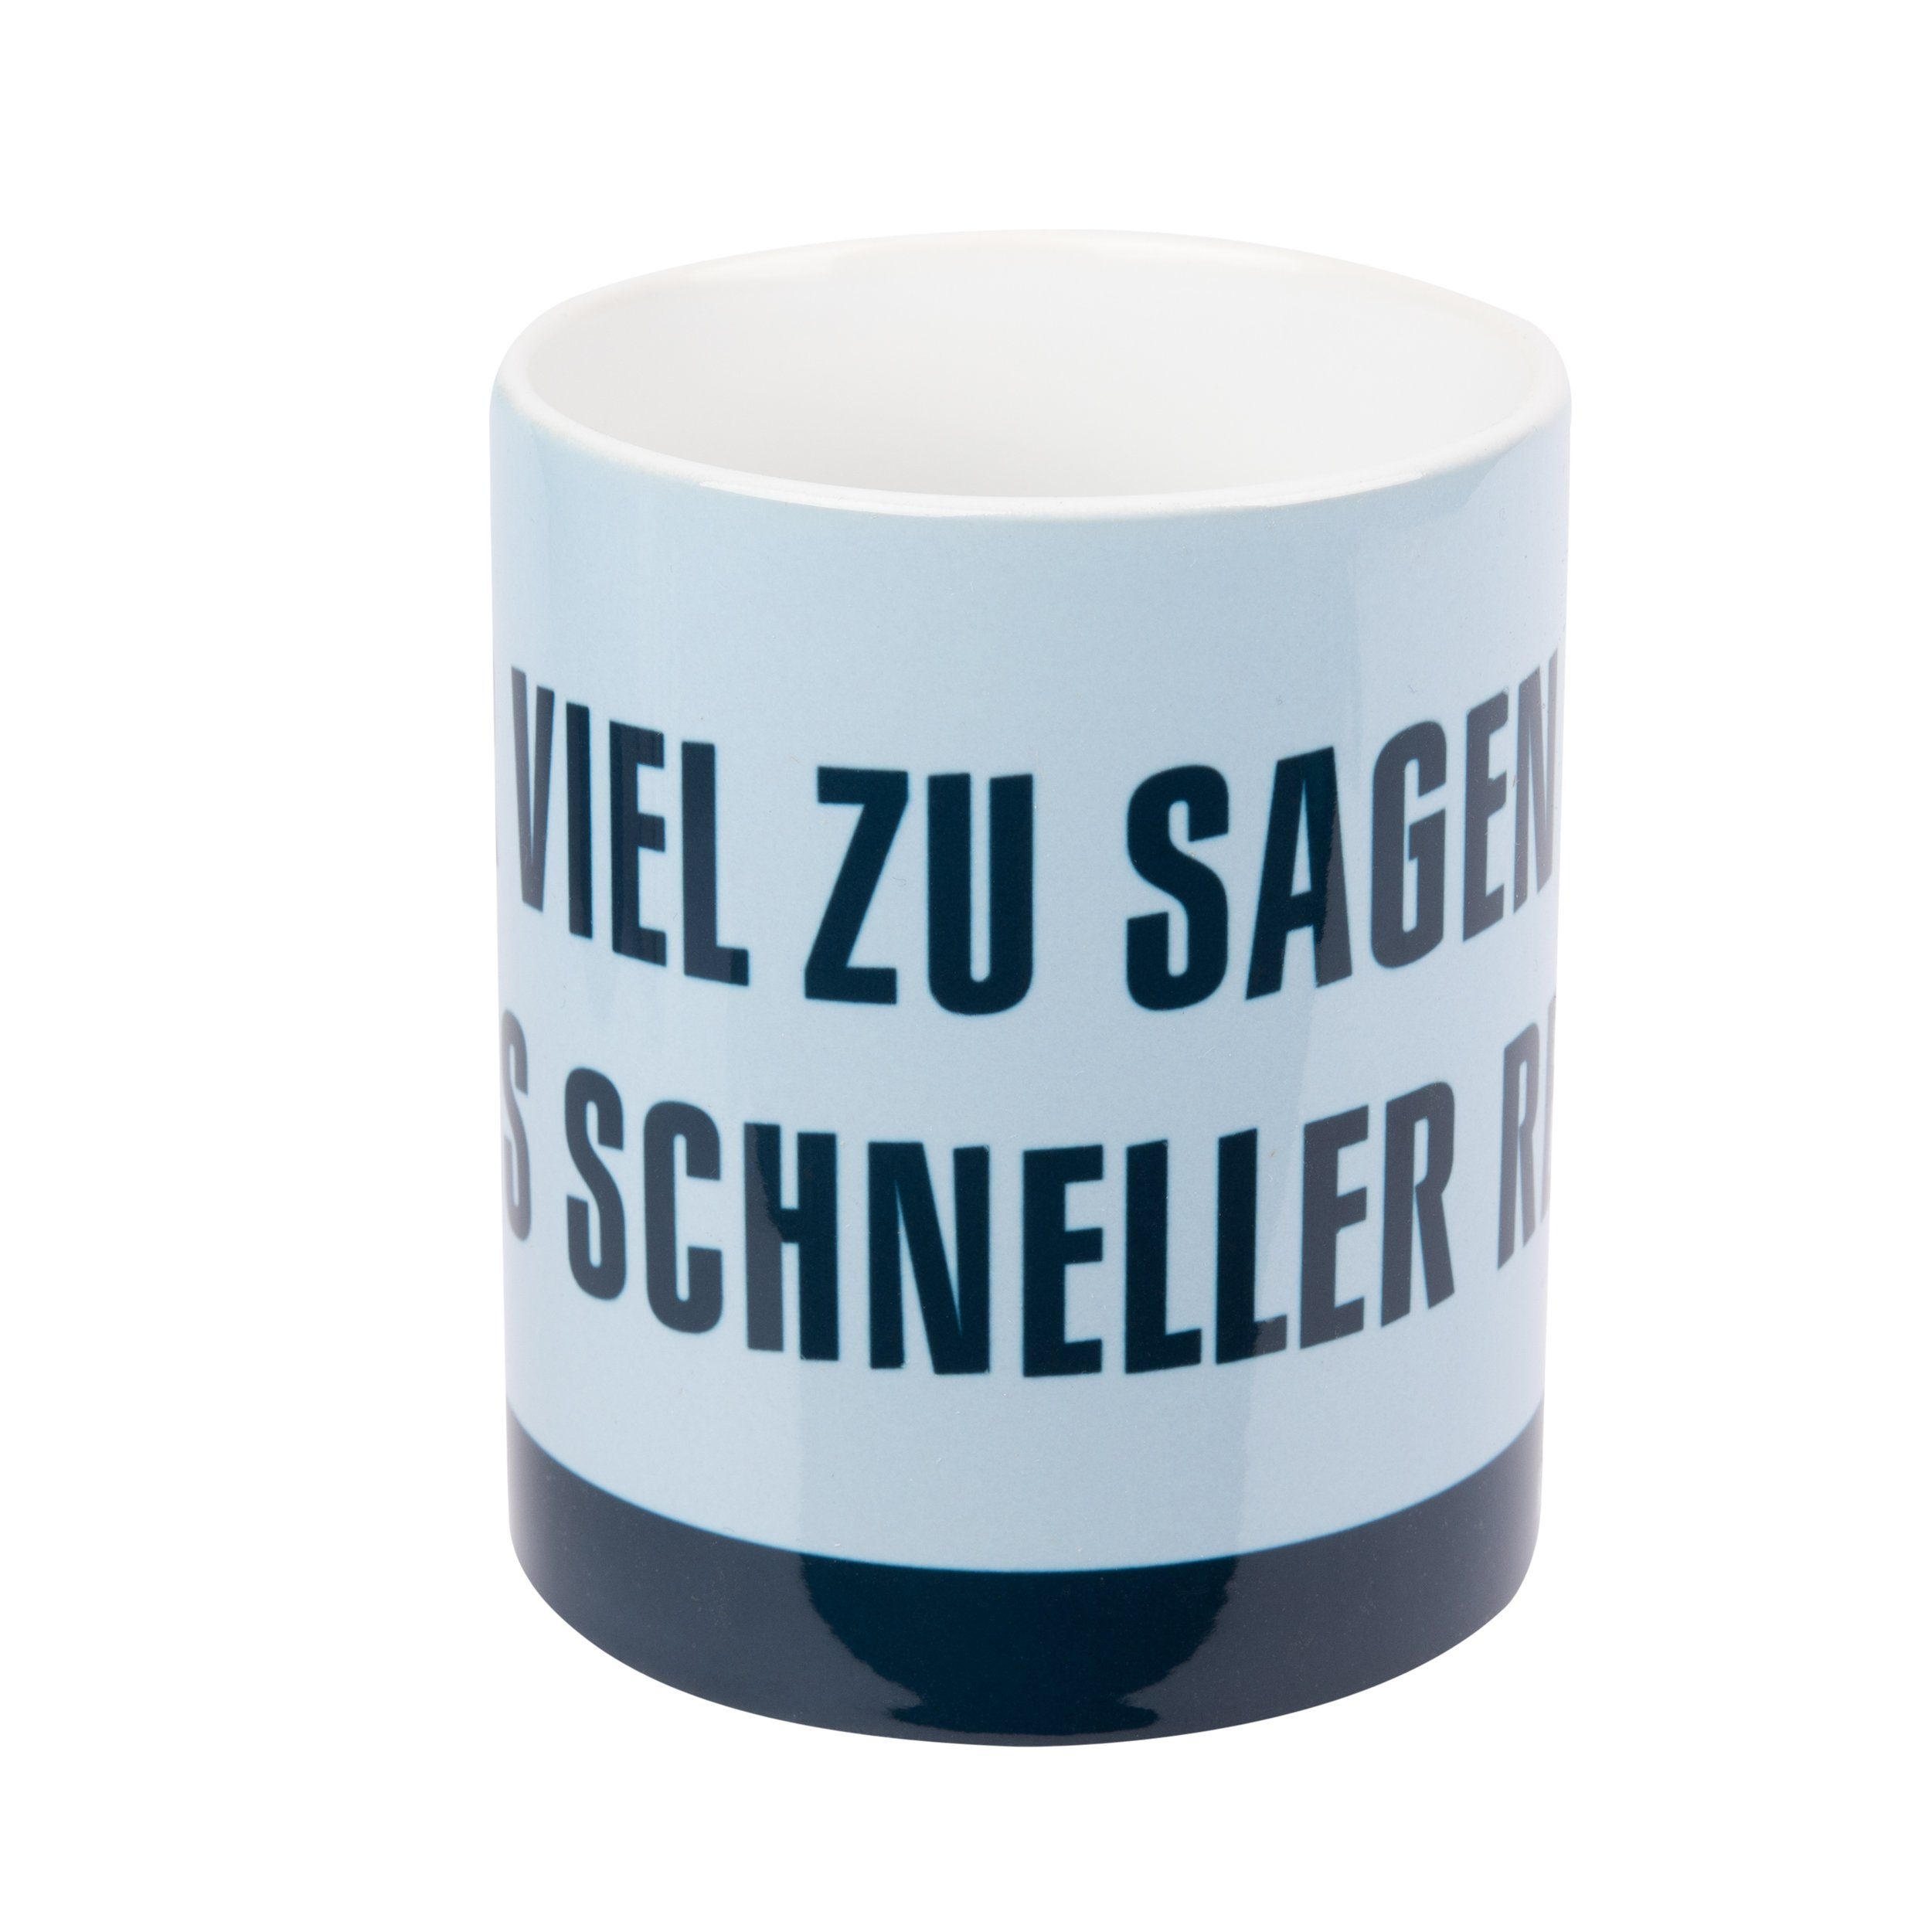 Ralf Wer Labels® Blau, sagen Schmitz - muss Tasse Keramik viel reden. hat, schneller zu Tasse United